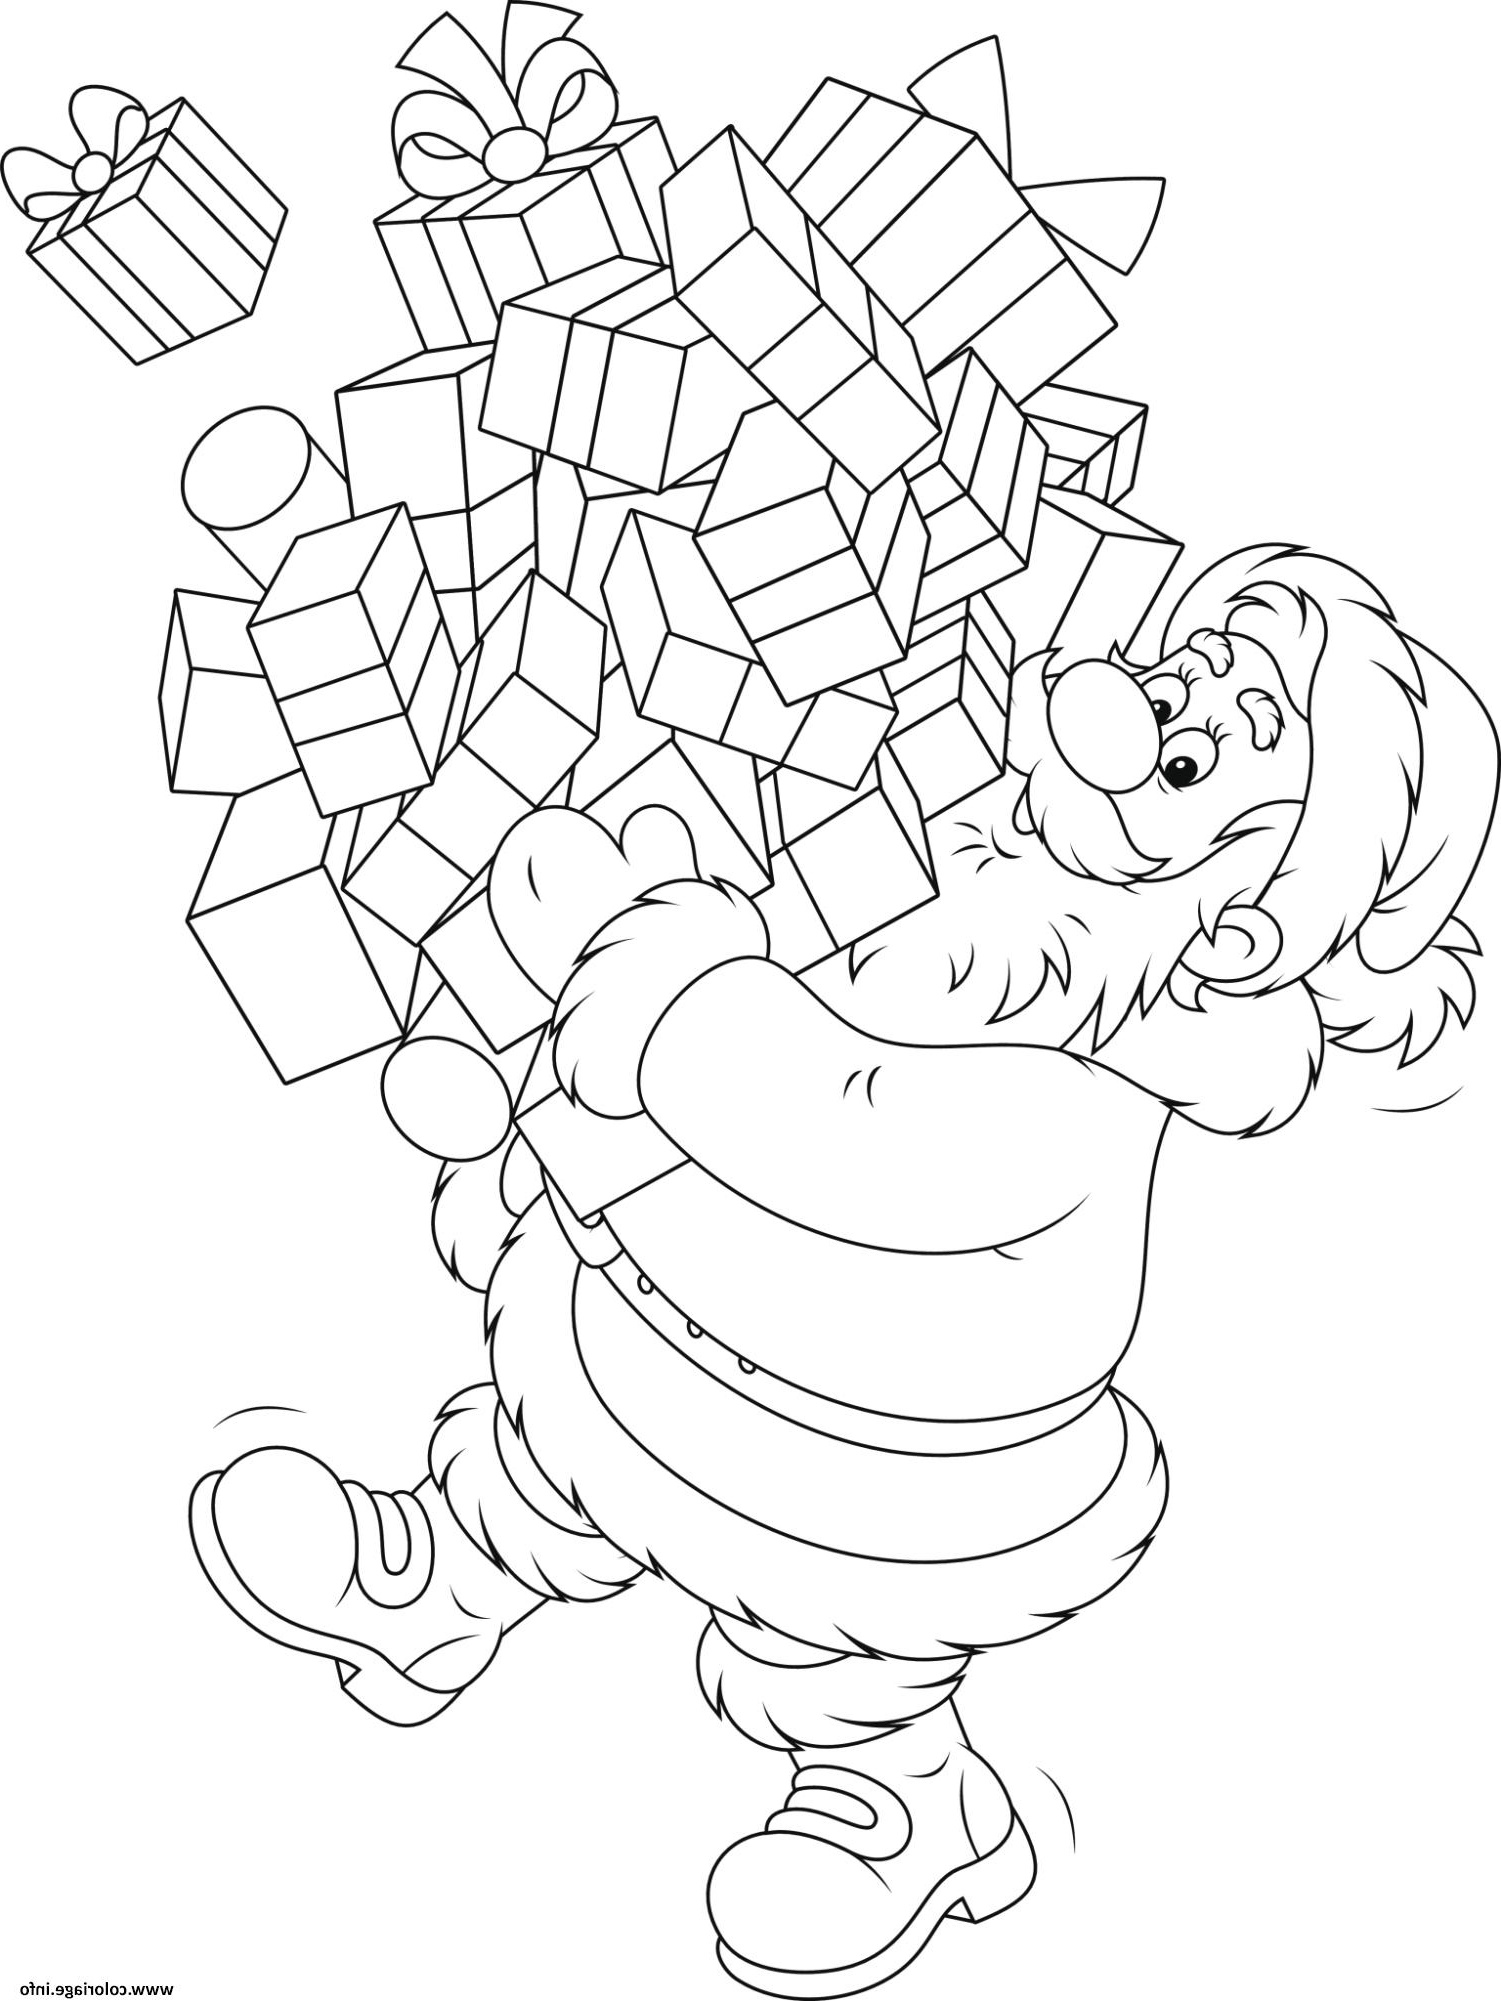 Dessin Noel Facile Élégant Image Coloriage Pere Noel Avec Pleins De Cadeaux De Noel Dessin